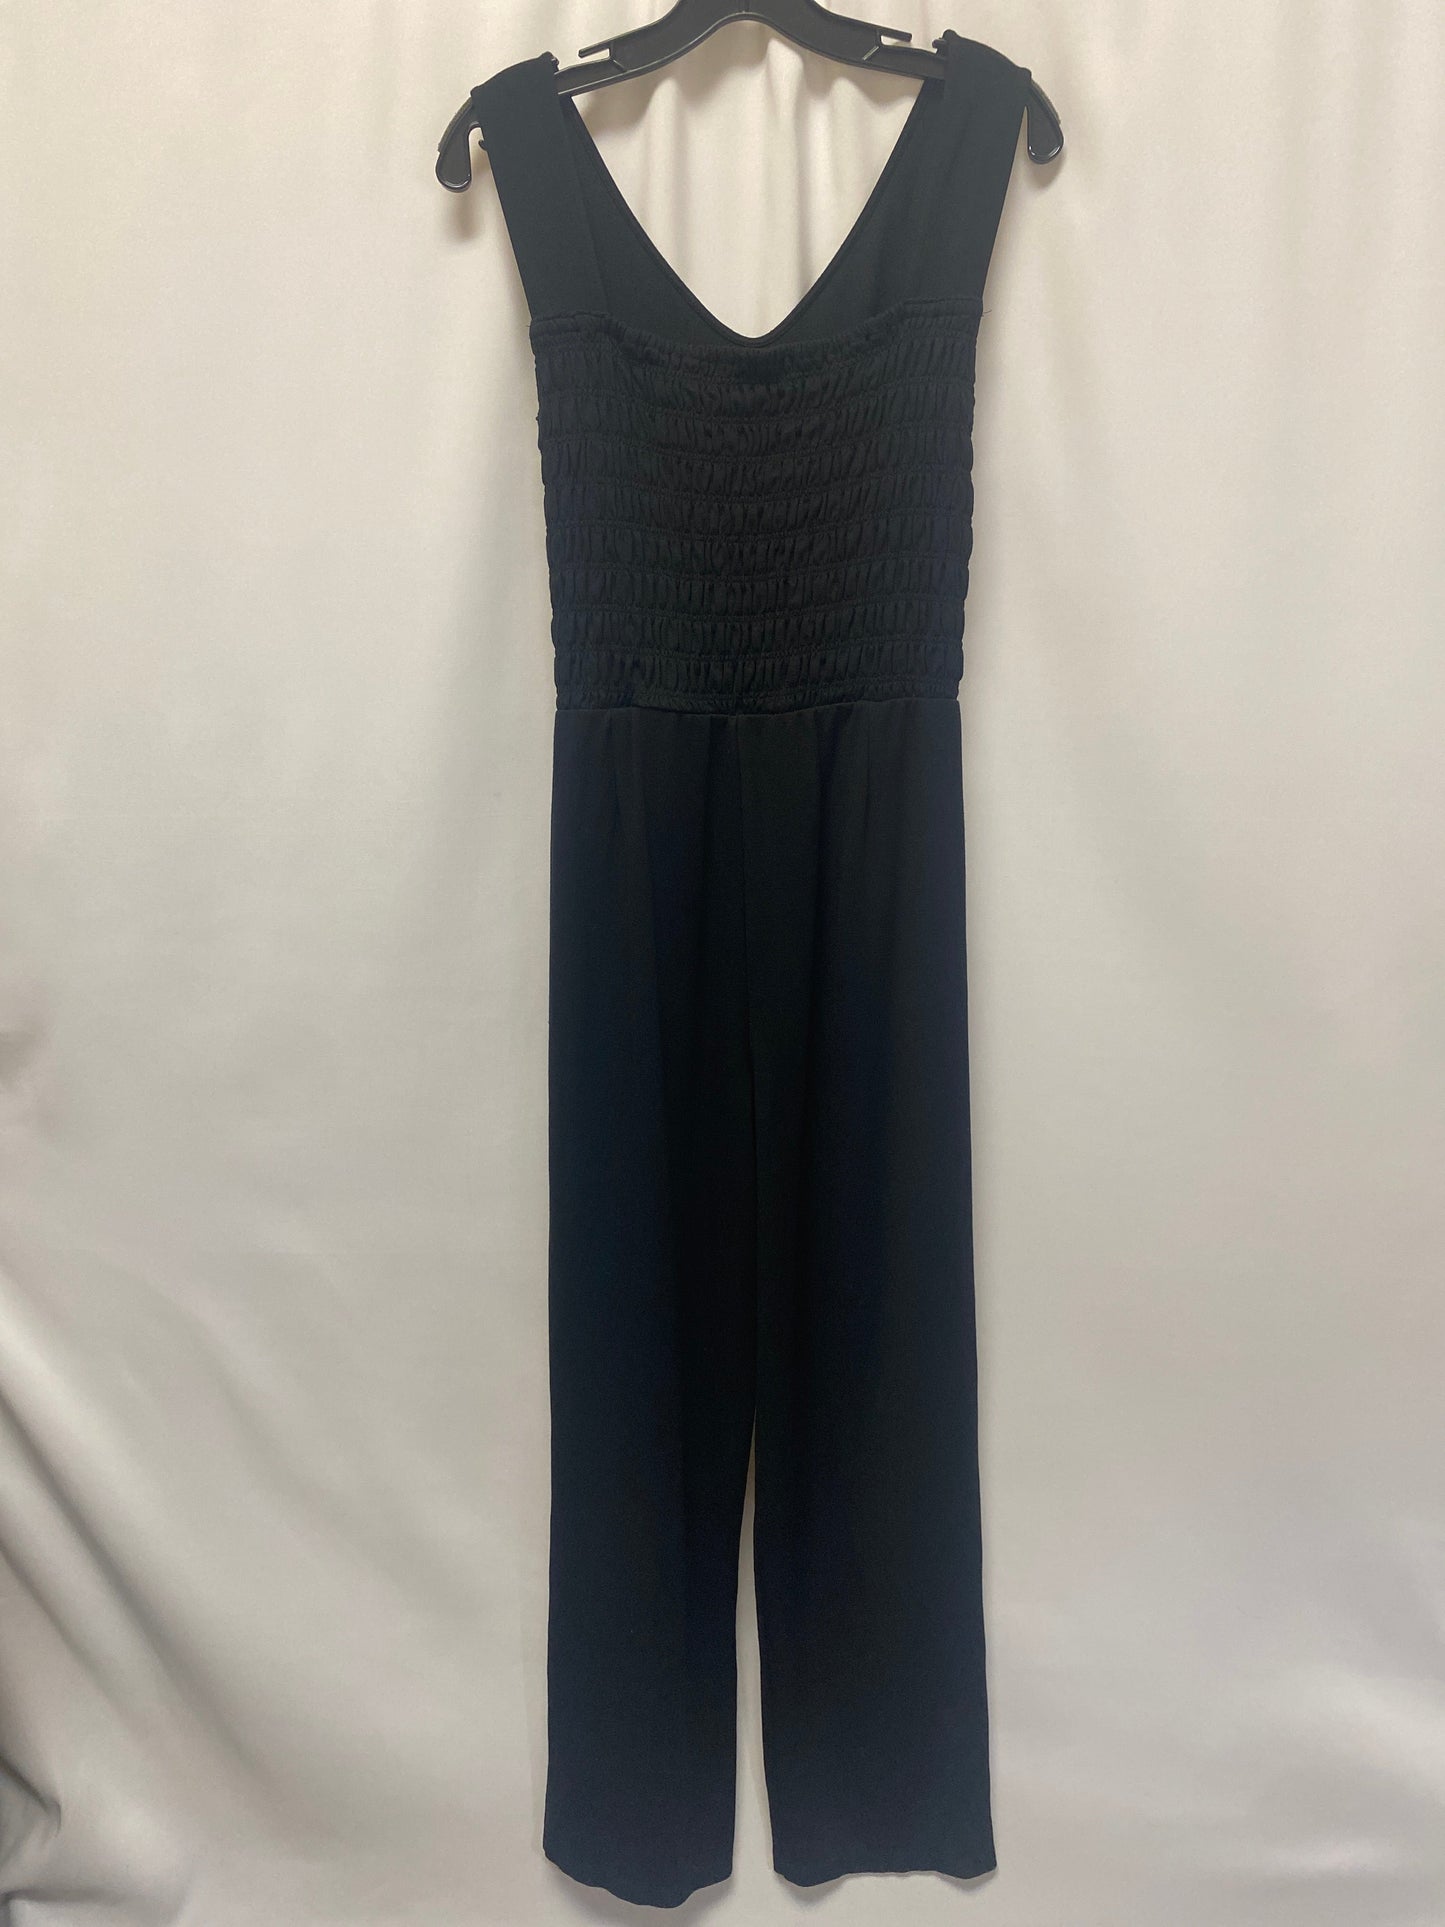 Black Jumpsuit Liz Claiborne, Size Xl